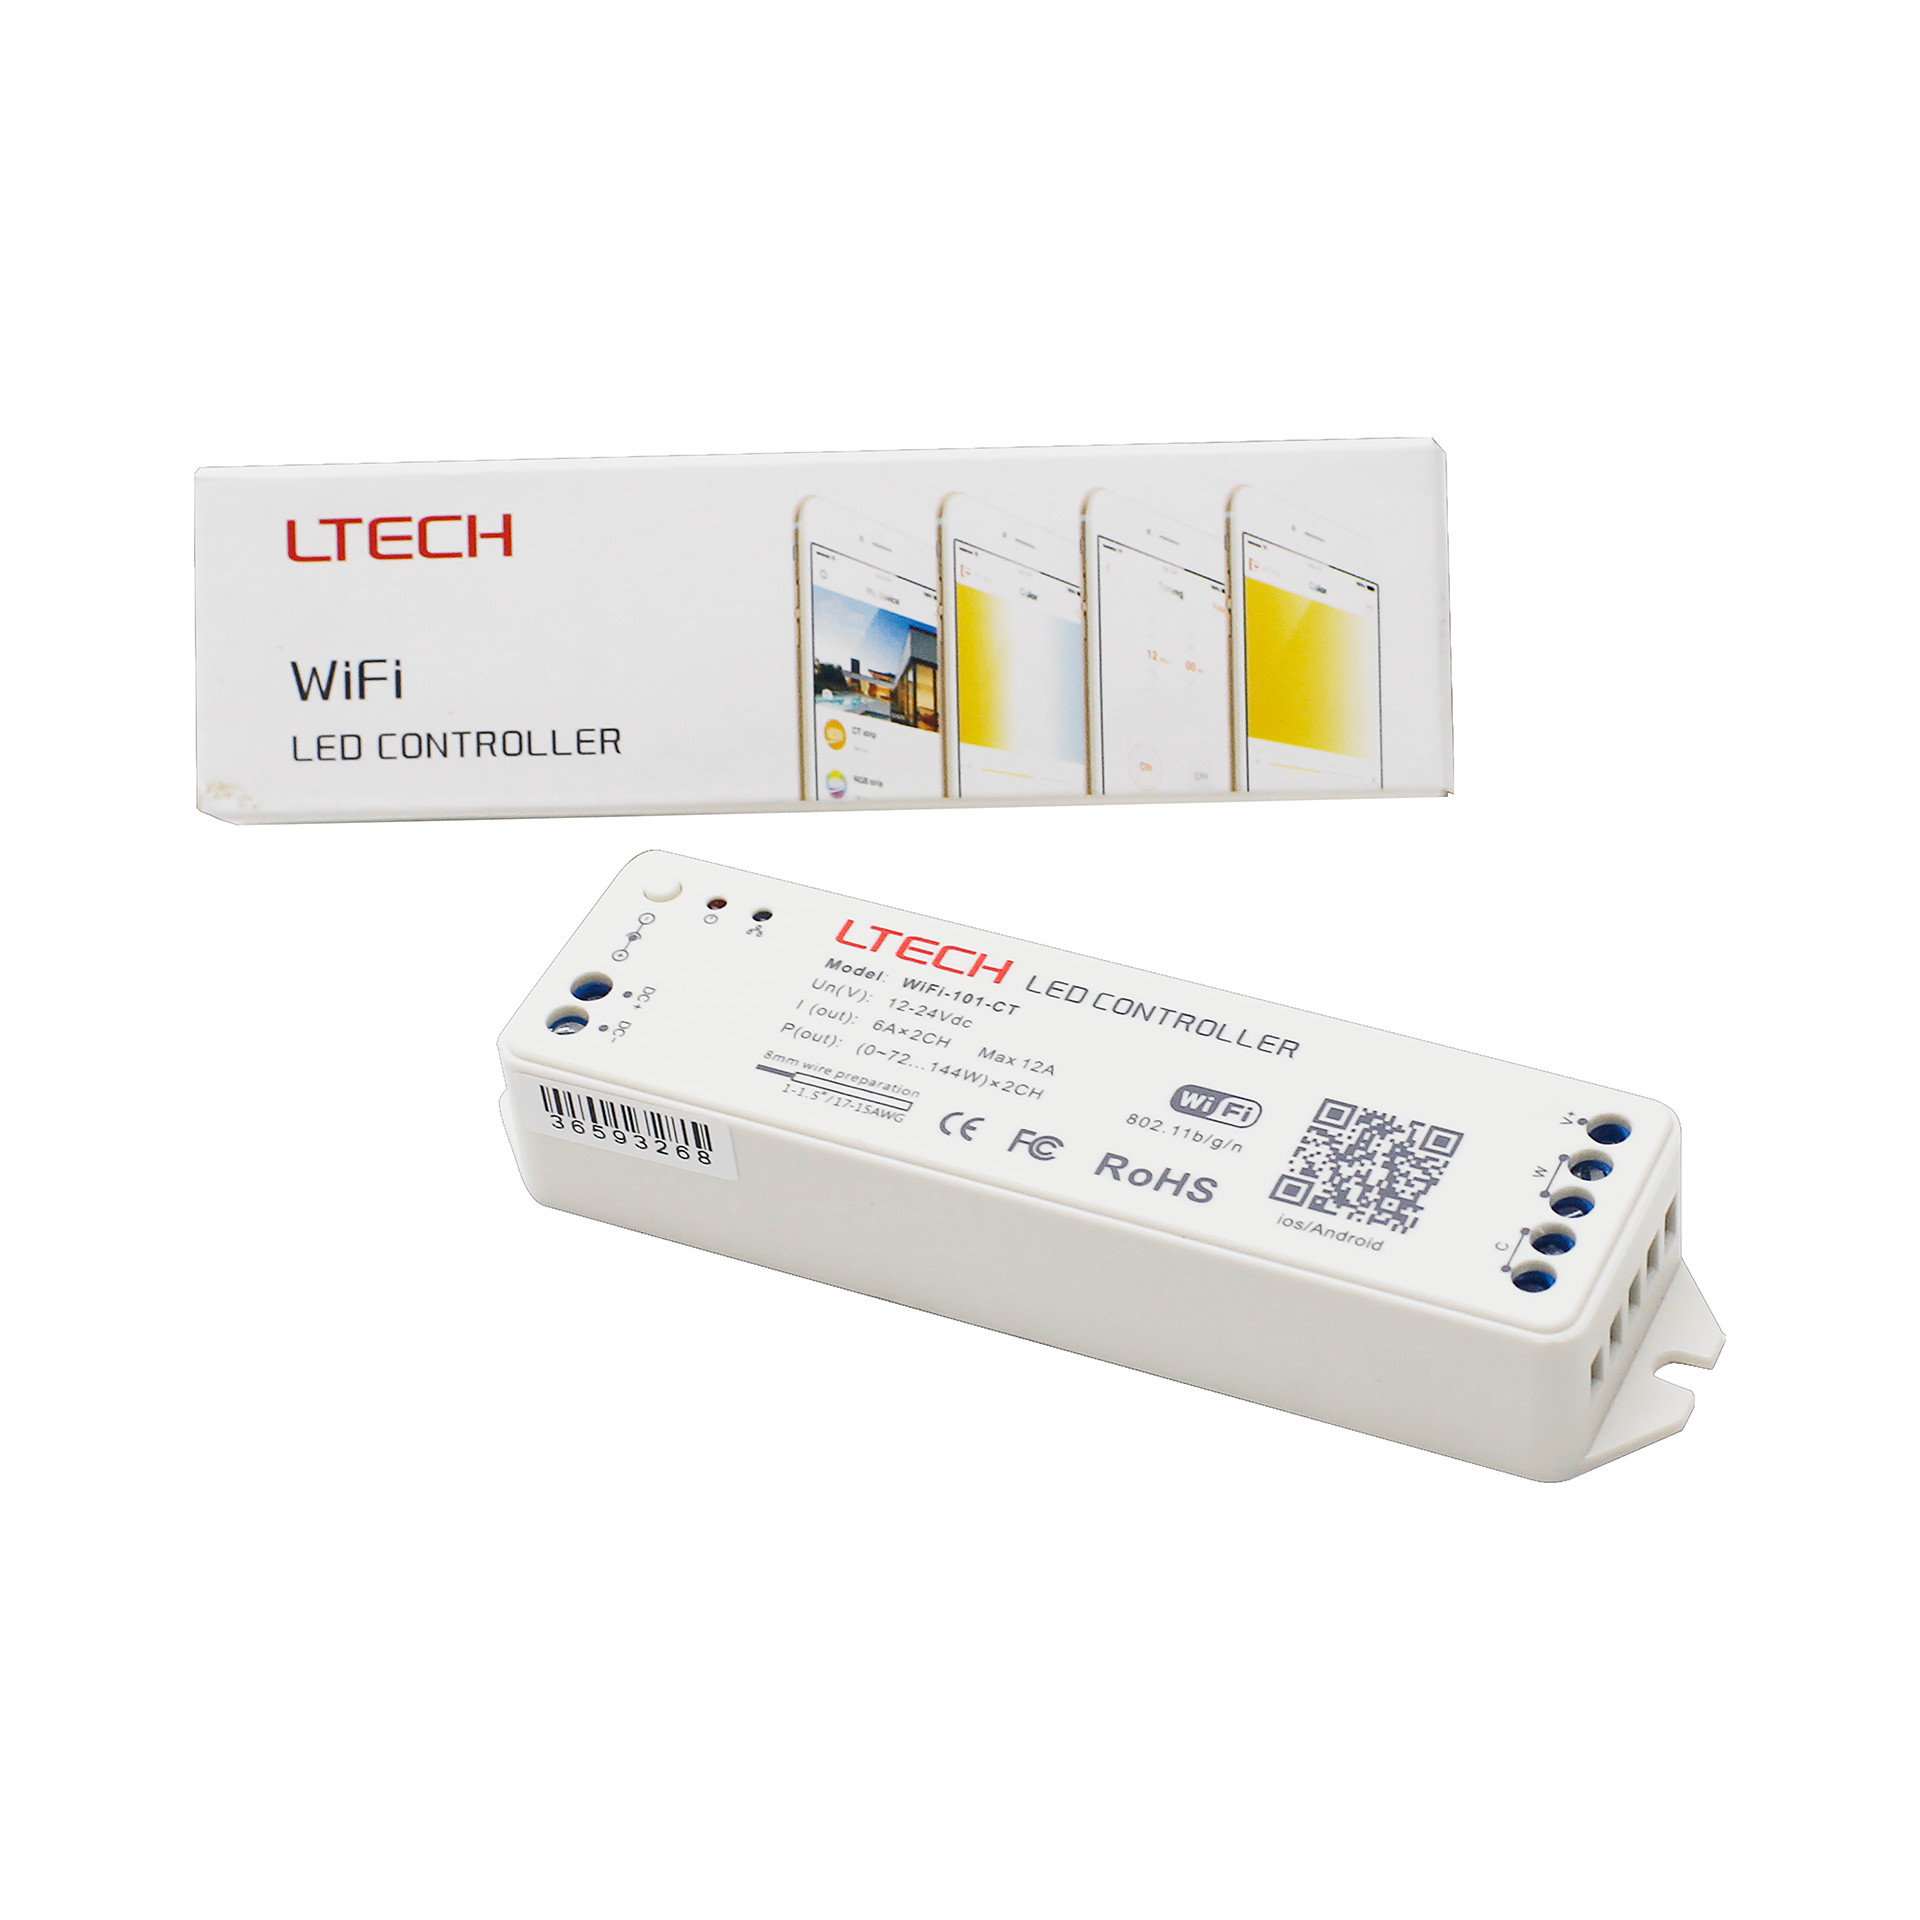 Bộ Điều Khiển Đèn Led Ltech Wifi-101-CT Điều Chỉnh Màu Sắc Ánh Sáng, LED Dimmer Controller - Hàng Nhập Khẩu